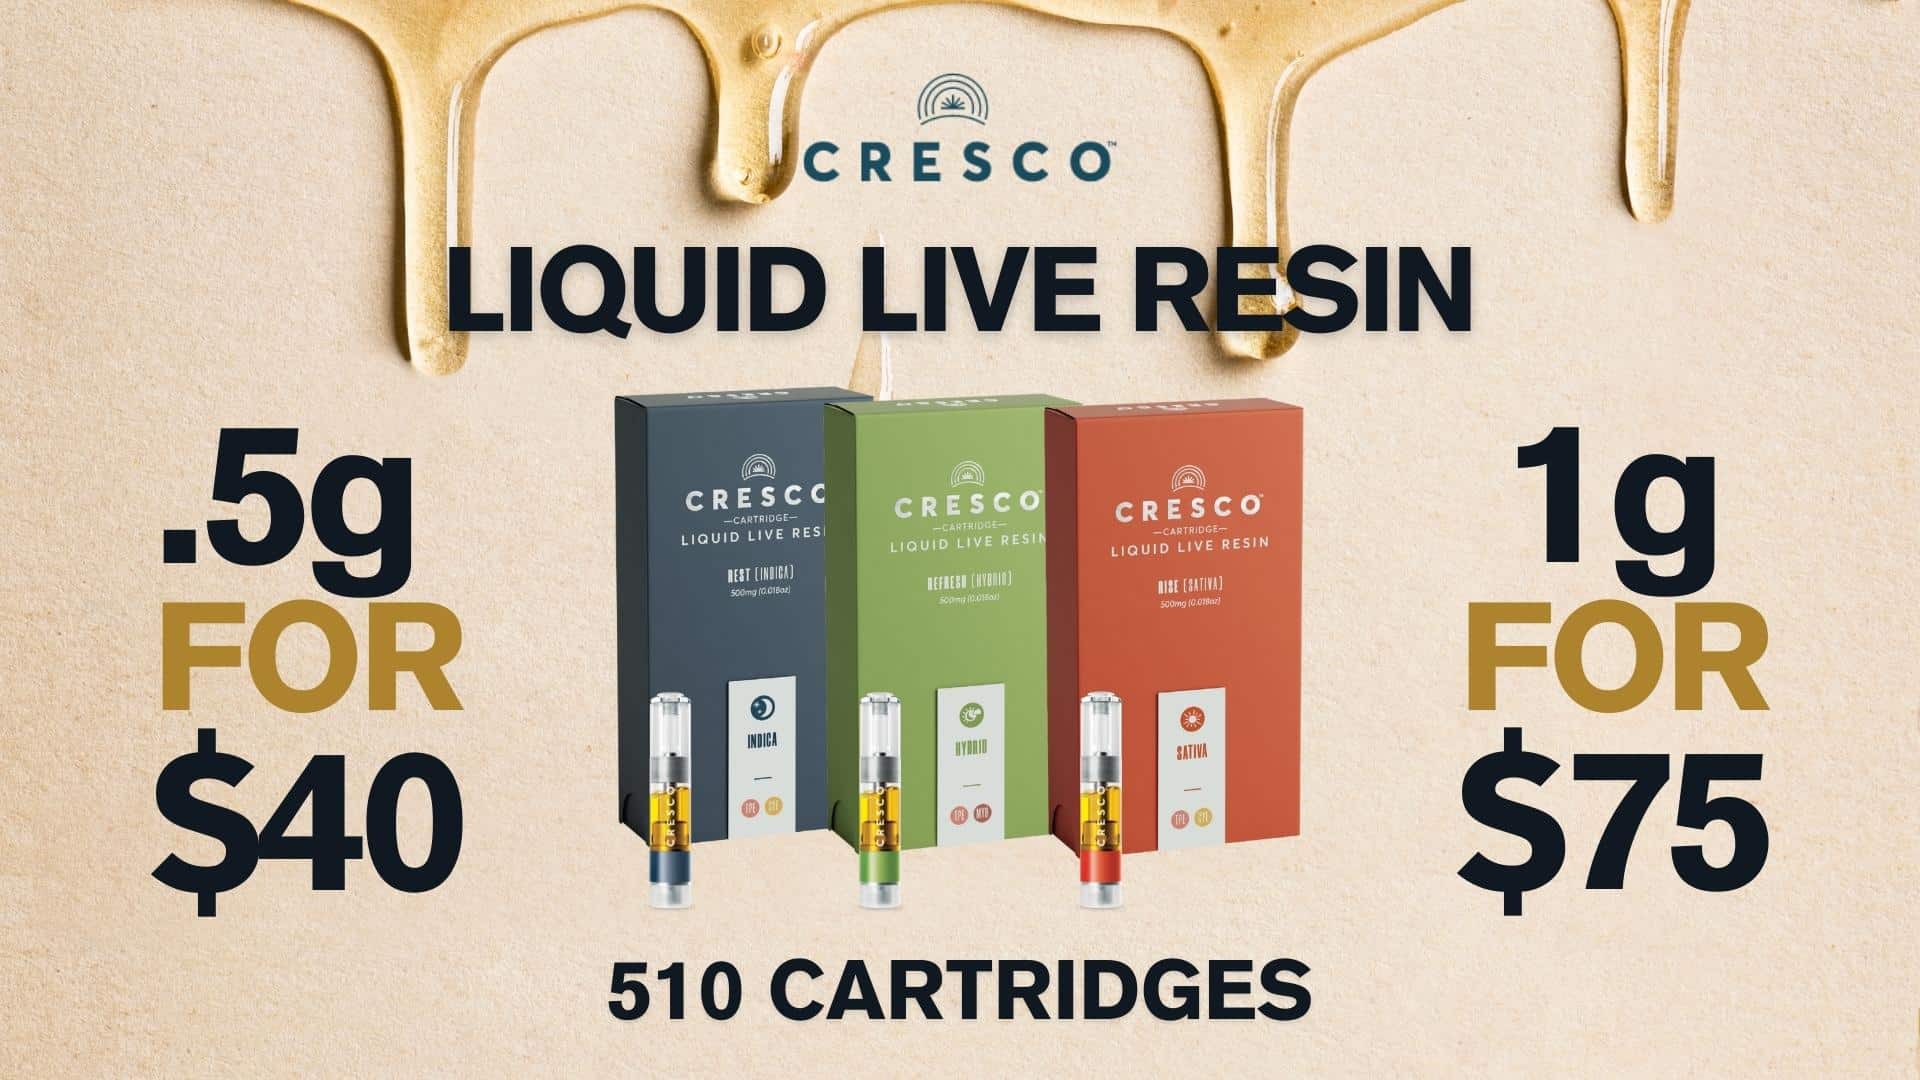 Cresco Liquid Live Resin 510 Cartridge Price Reduction